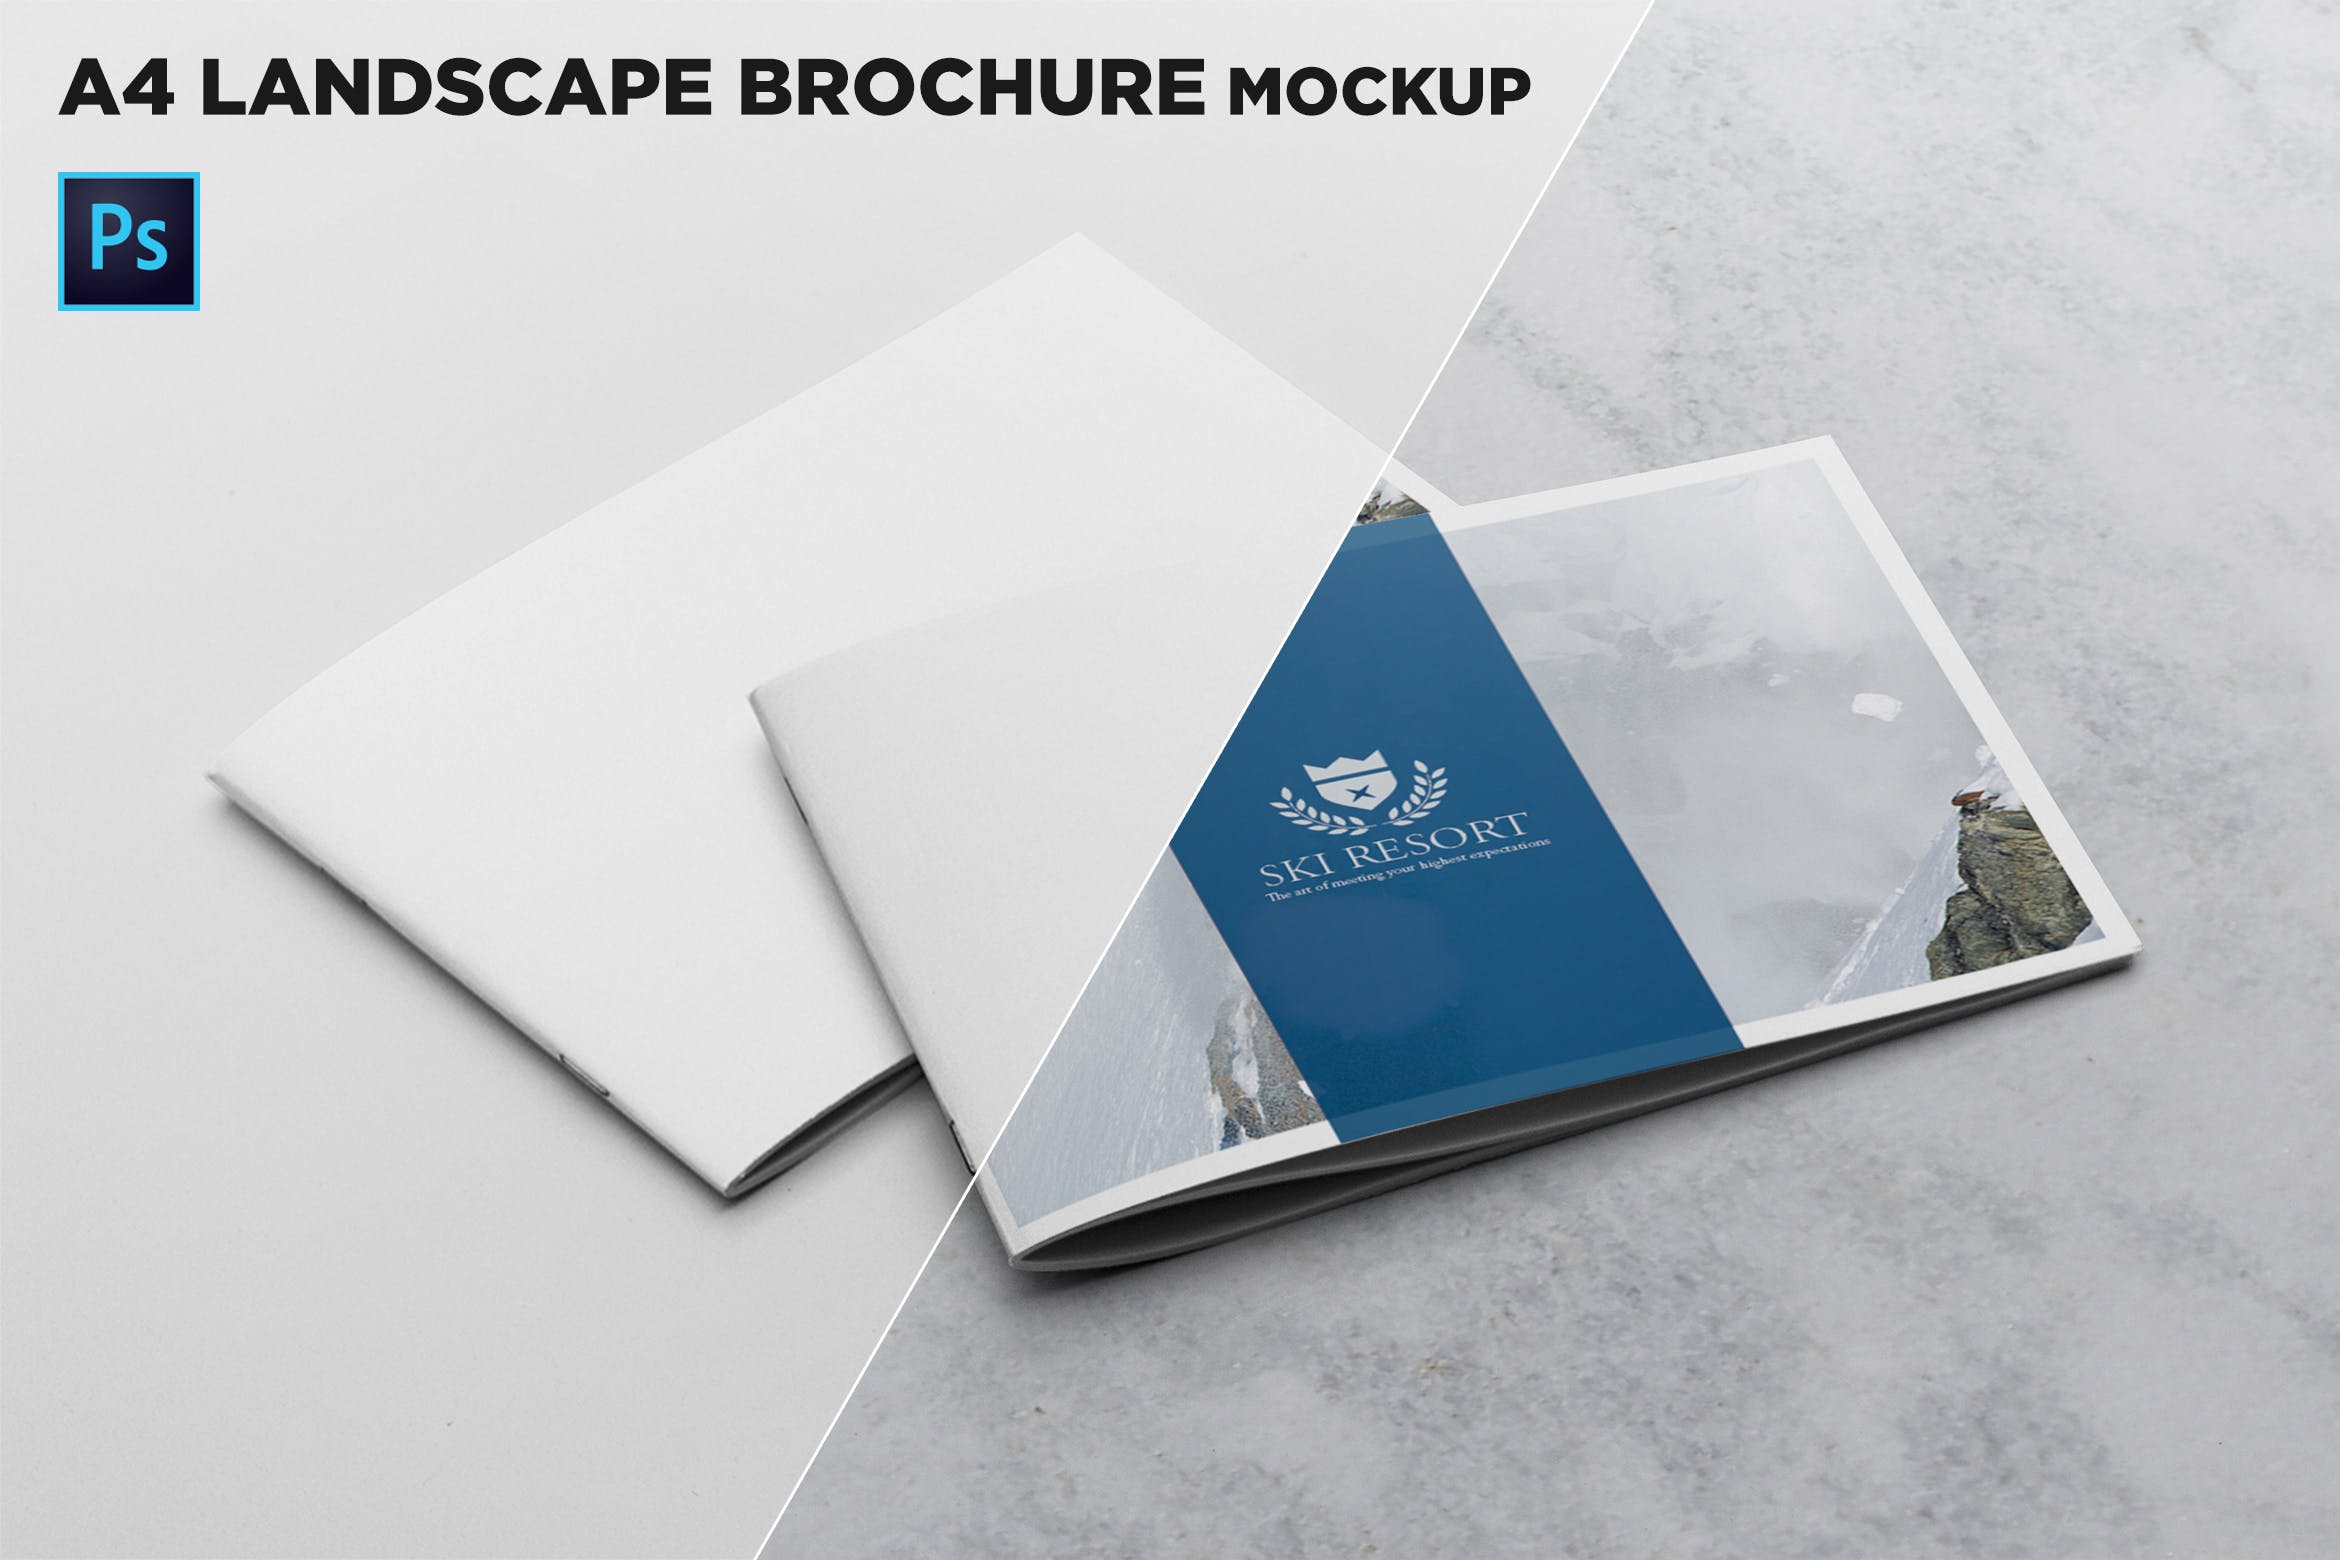 宣传画册/企业画册叠放效果图样机蚂蚁素材精选模板 2 Covers Landscape Brochure Mockup插图